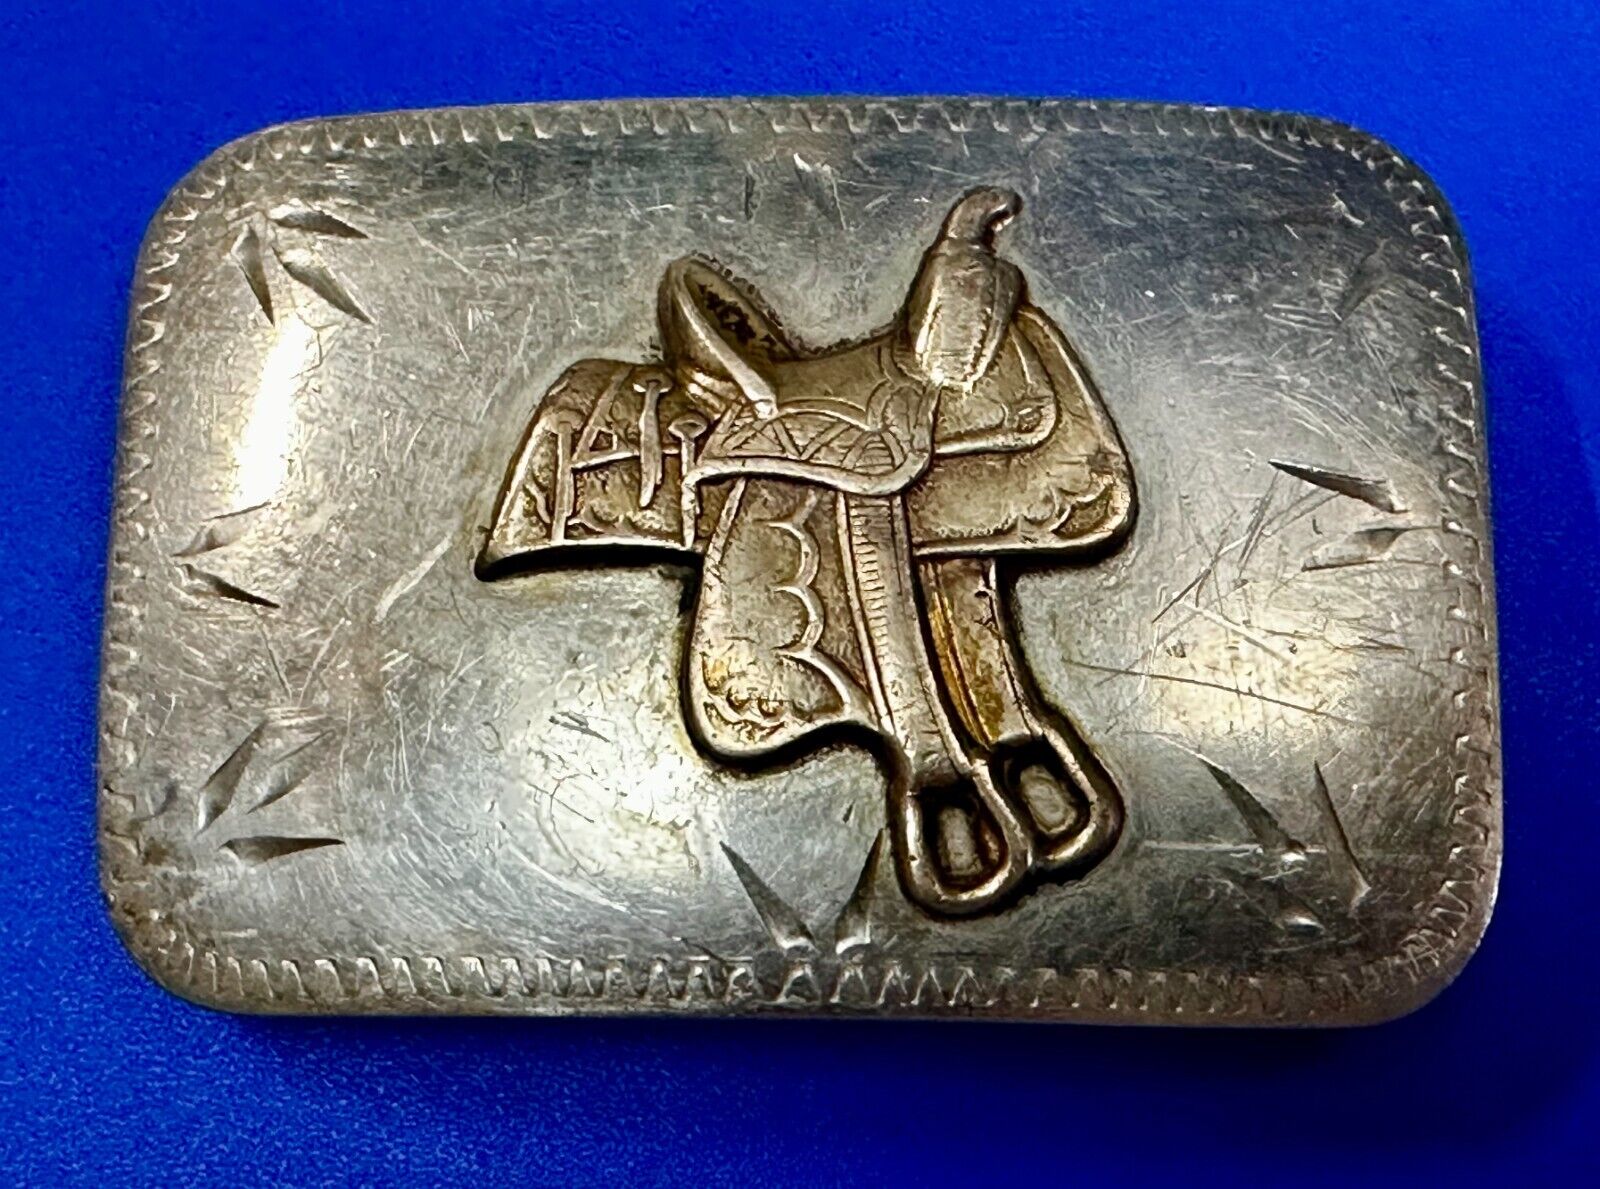 Vintage Horse Saddle - Solid Nickel Belt Buckle by Renalde - Denver Colorado